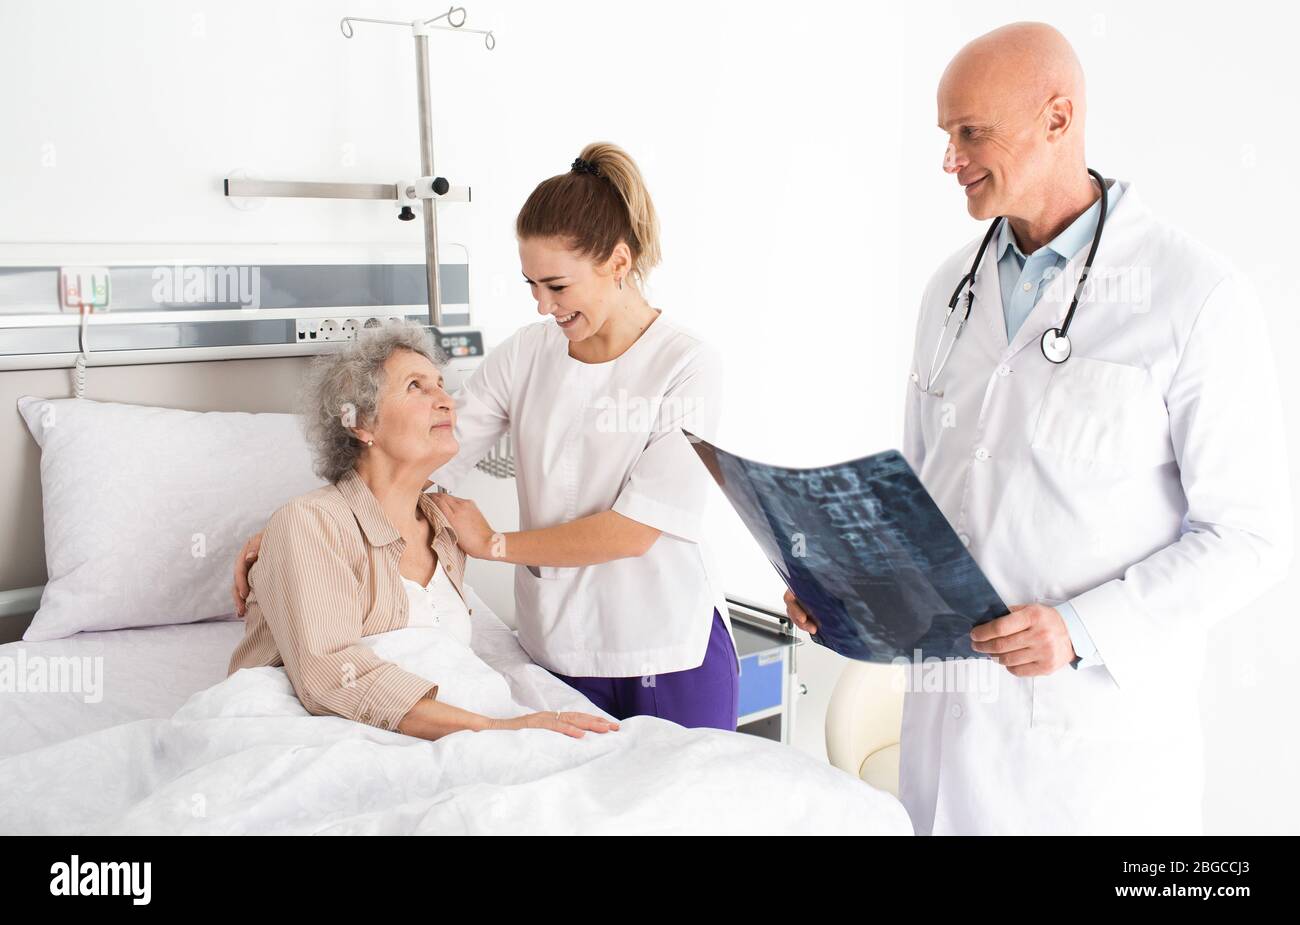 Soins médicaux à propos des personnes âgées patient âgé allongé dans un lit d'hôpital, ayant un soutien infirmier. Traitement et soins cliniques pour les personnes âgées Banque D'Images